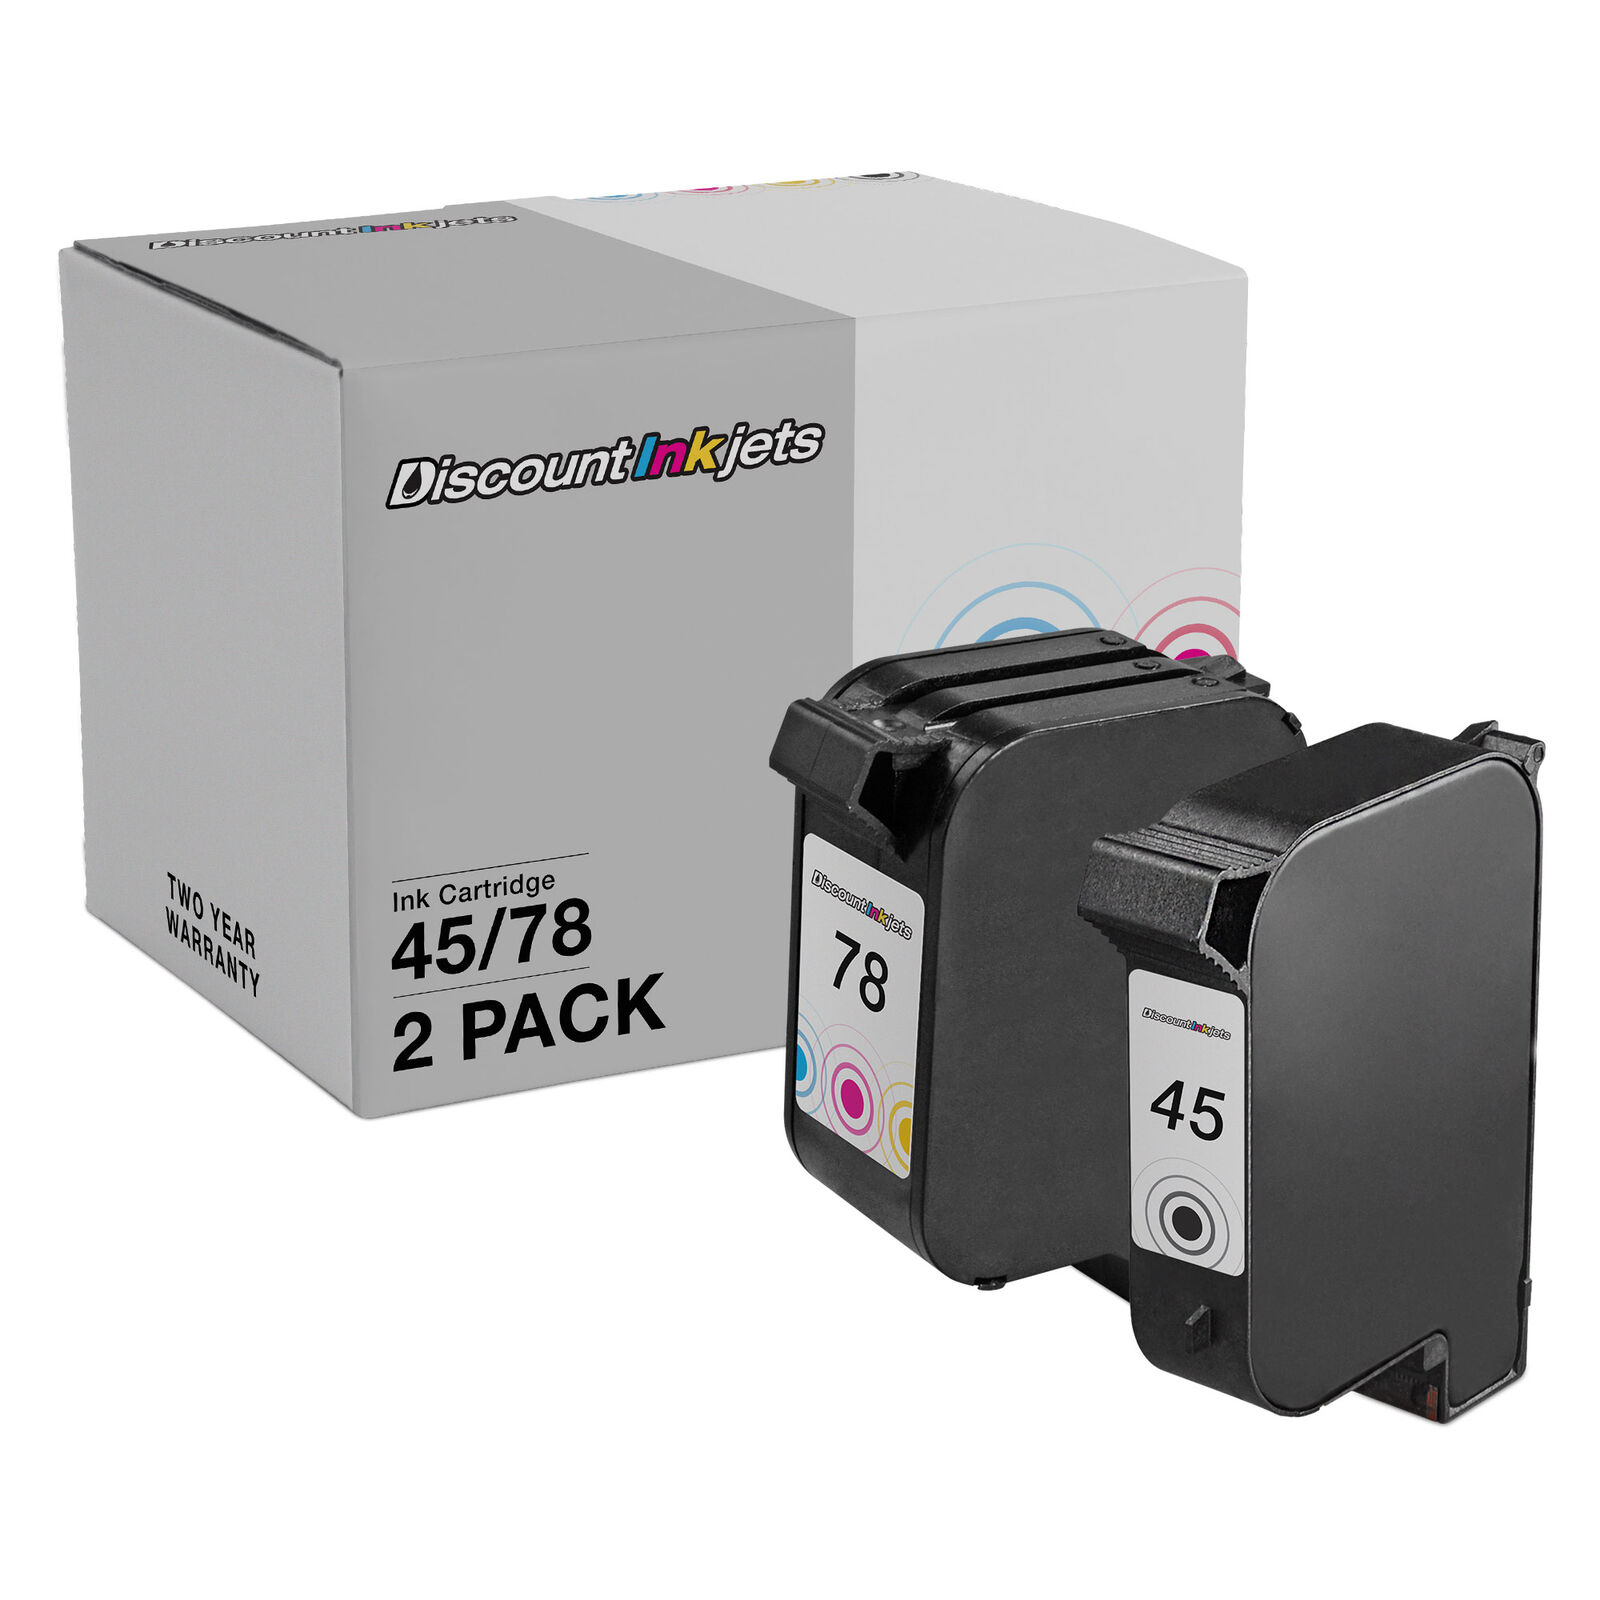 2 pack 45 78 51645A Black & Color Printer Ink Cartridge for HP Deskjet 930 930c